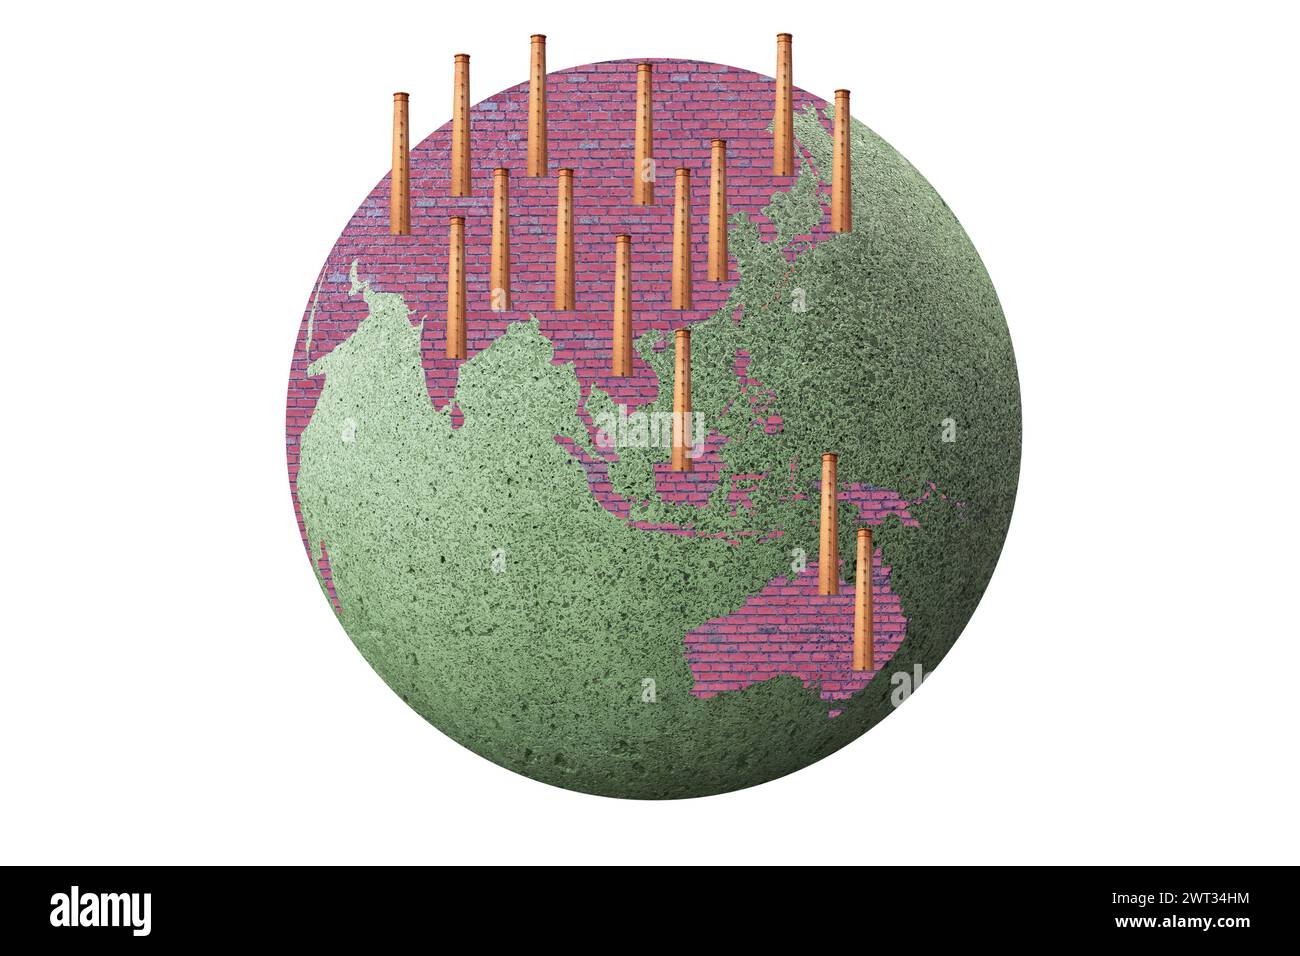 Tierra con los continentes de Asia y Australia cubiertos por las chimeneas de sus fábricas. Concepto de contaminación y calentamiento global. Foto de stock